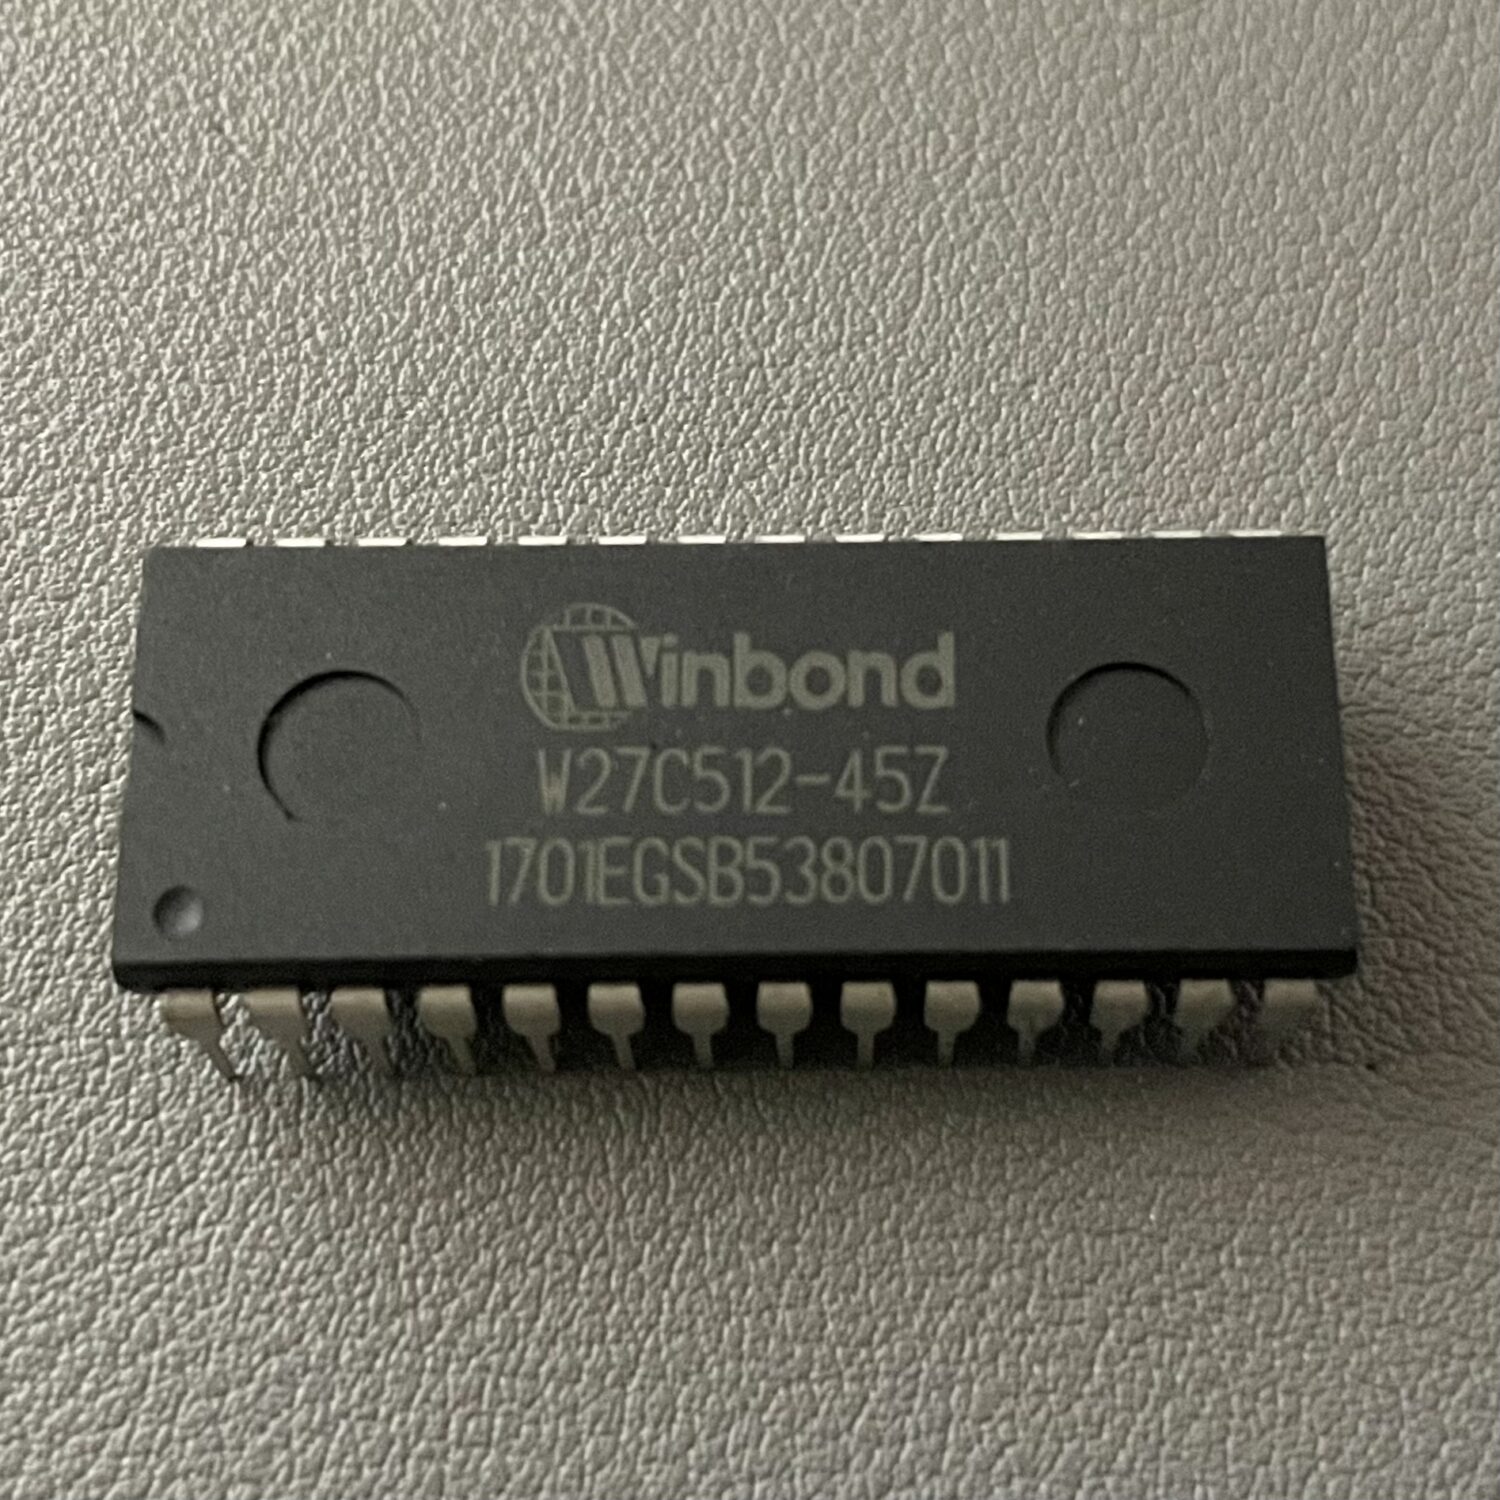 Winbond W27C512-45Z EEPROM